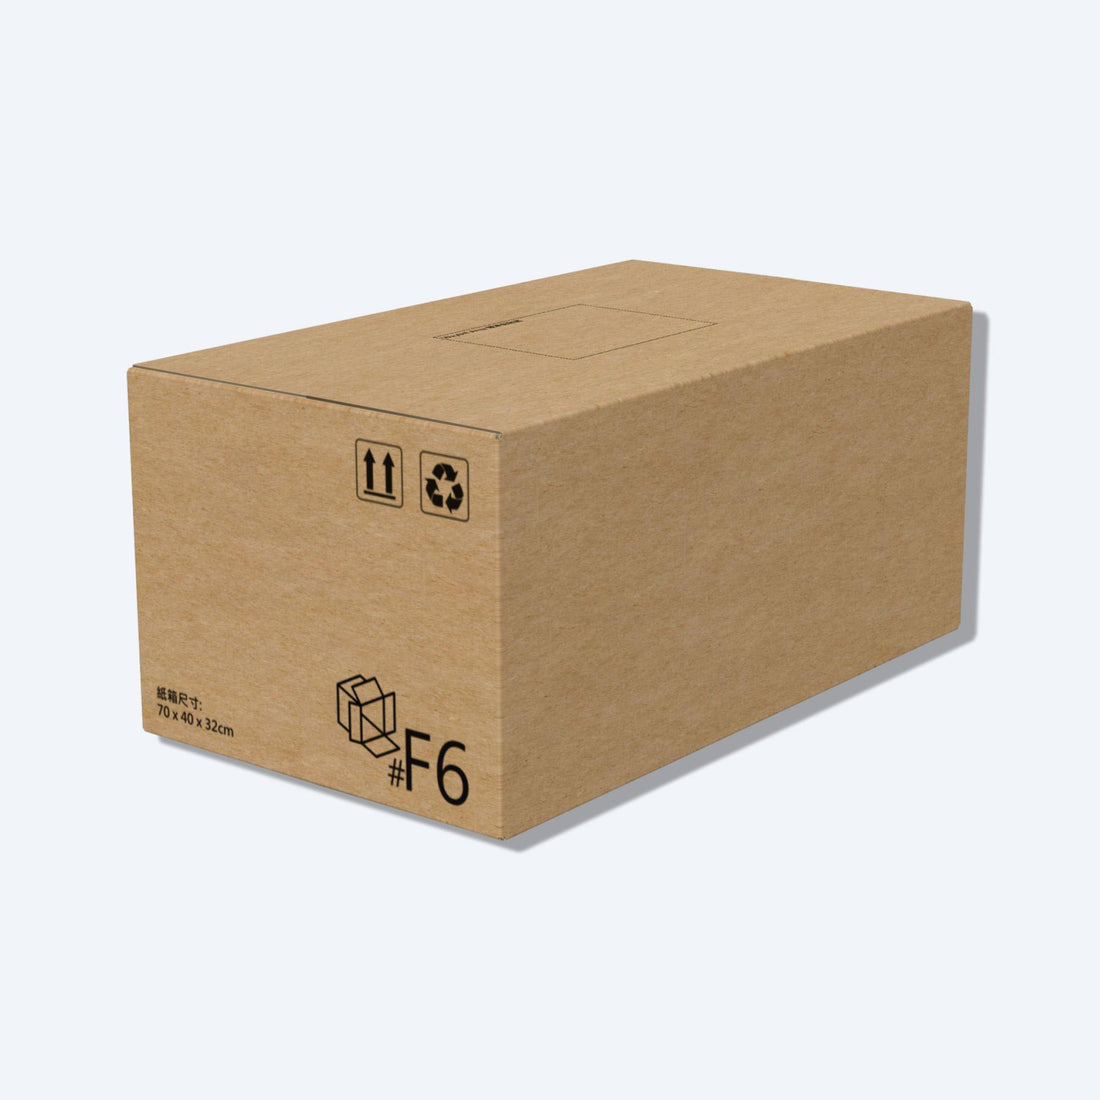 順豐F6尺寸紙箱展開圖，其尺寸符合順豐速運的包裝標準，展示折疊和組裝方式。